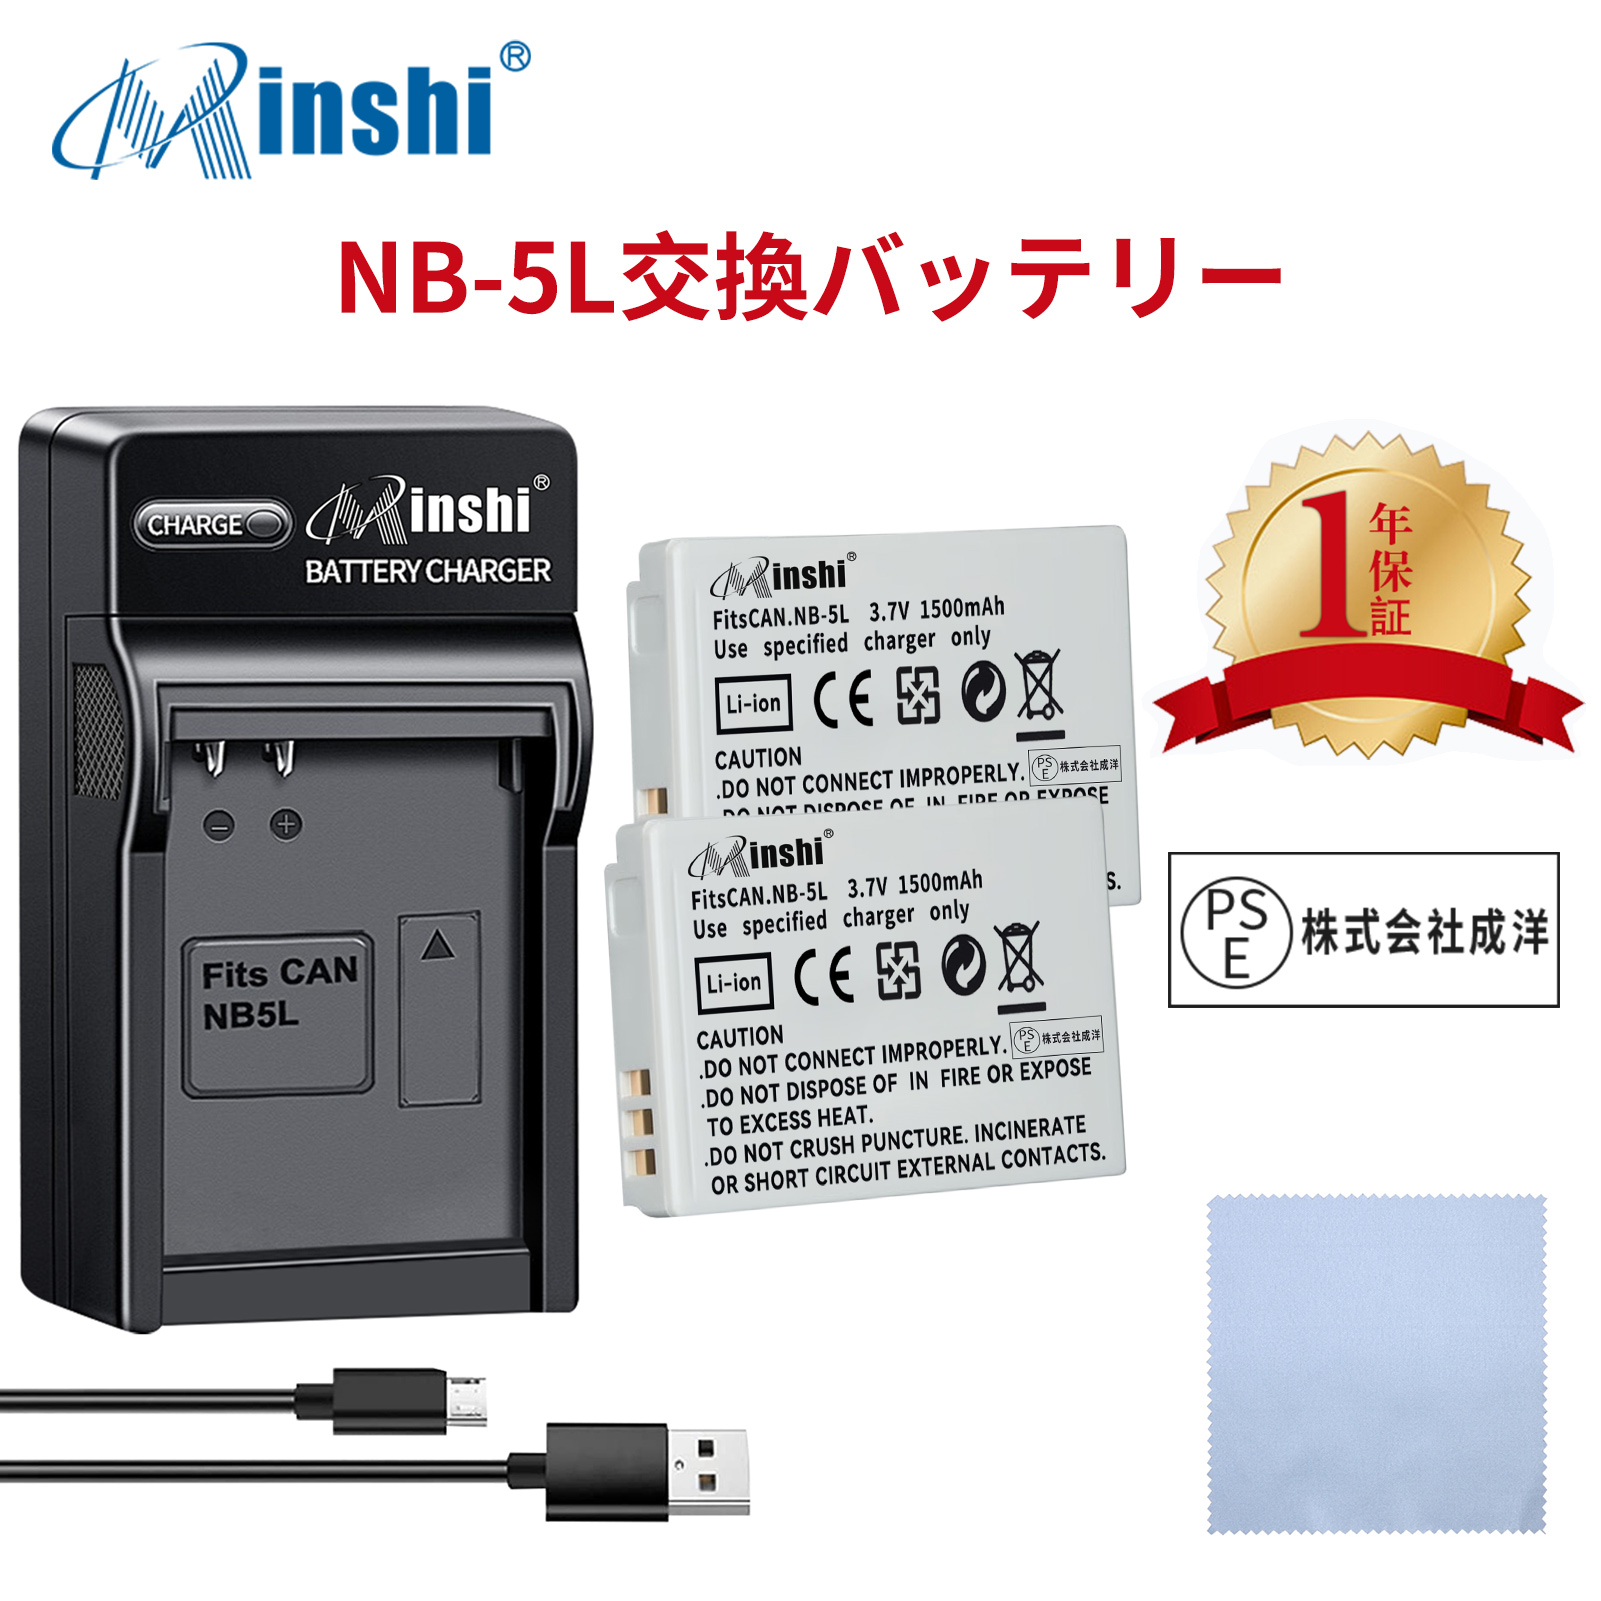 【セット】minshi CANON SX210IS 【1500mAh 3.7V】PSE認定済 高品質 NB-5L 交換用バッテリー【2個】